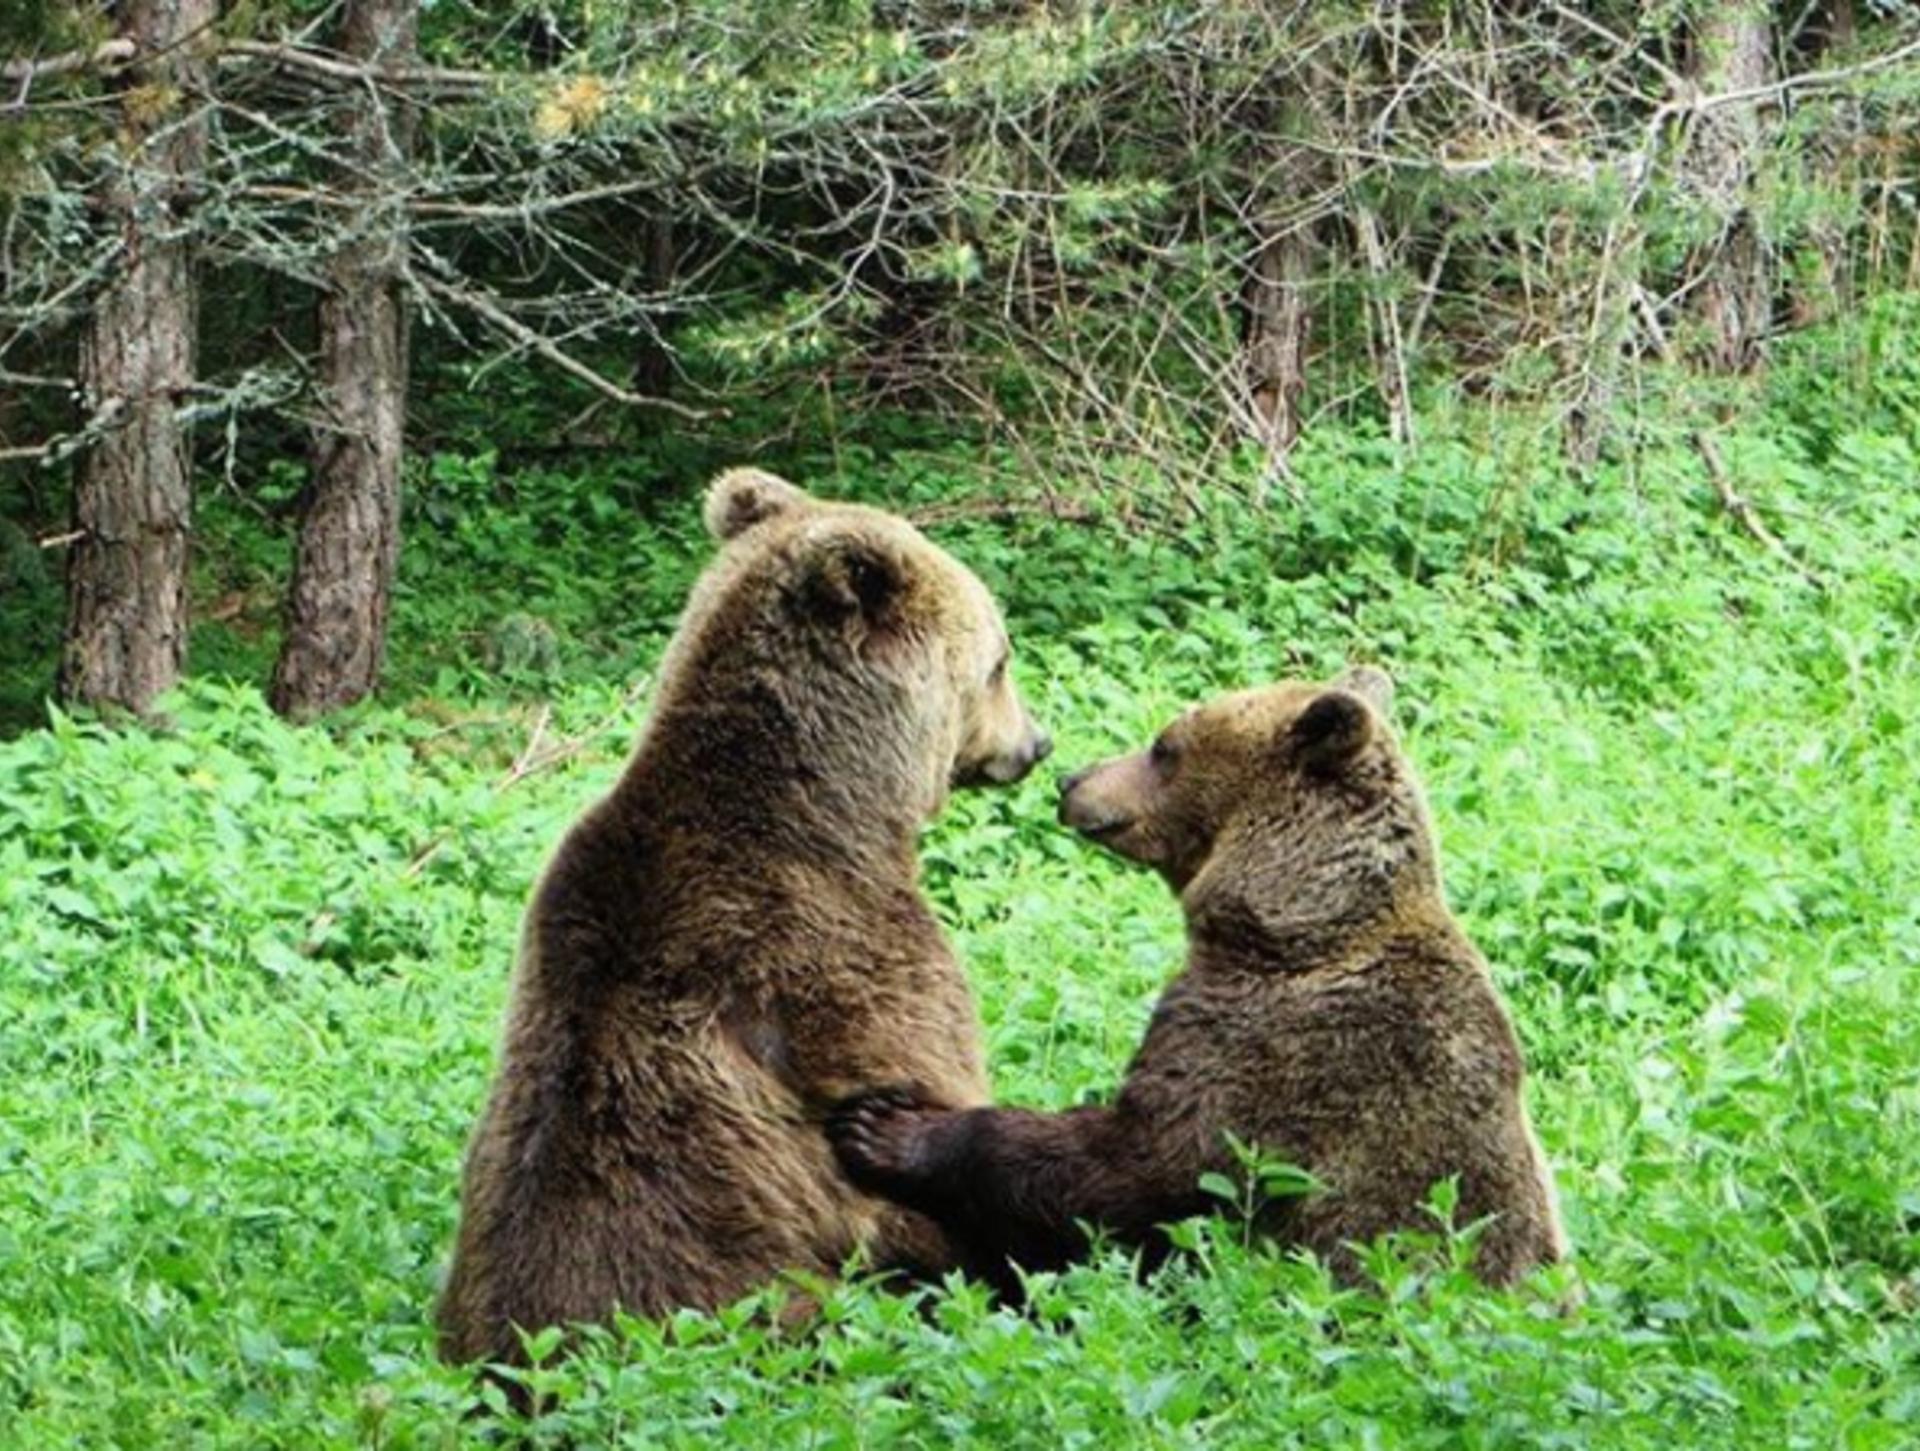 Je to více než měsíc, co ochranáři z Tatranského národního parku usmrtili medvědici a jedno mládě. (Ilustrační foto)